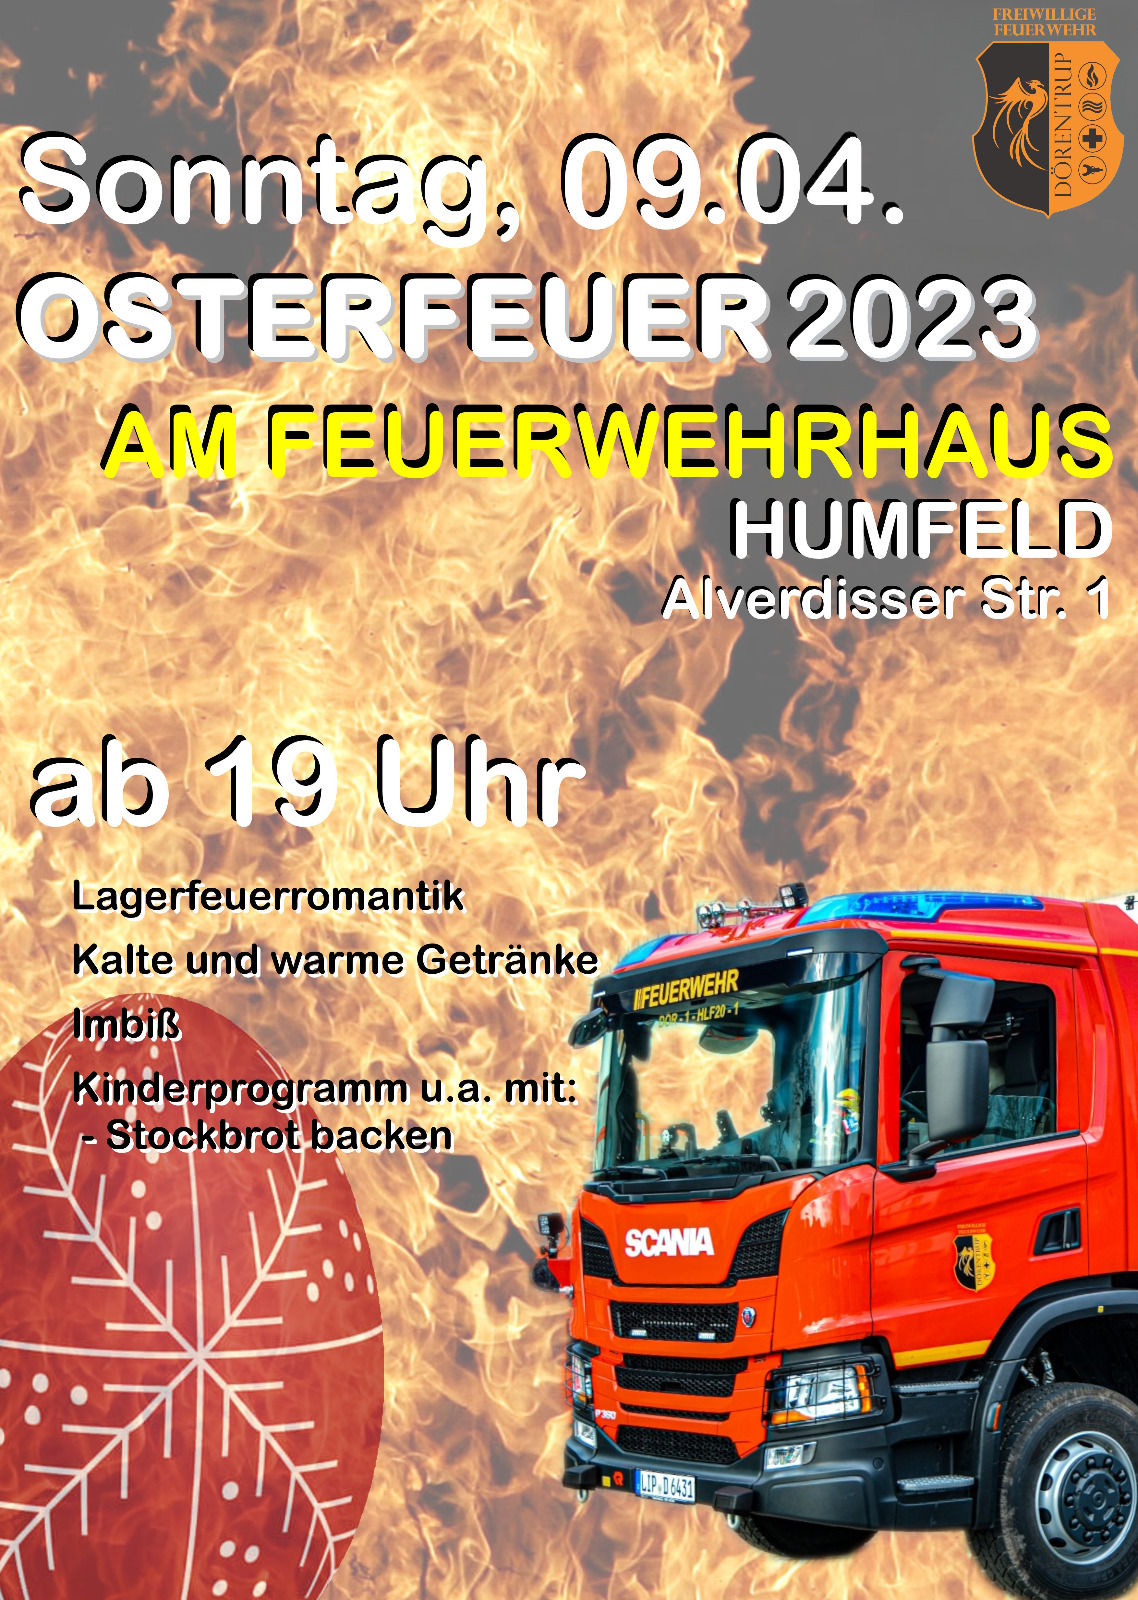 Osterfeuer 2023 | Feuerwehr Dörentrup Einheit Humfeld